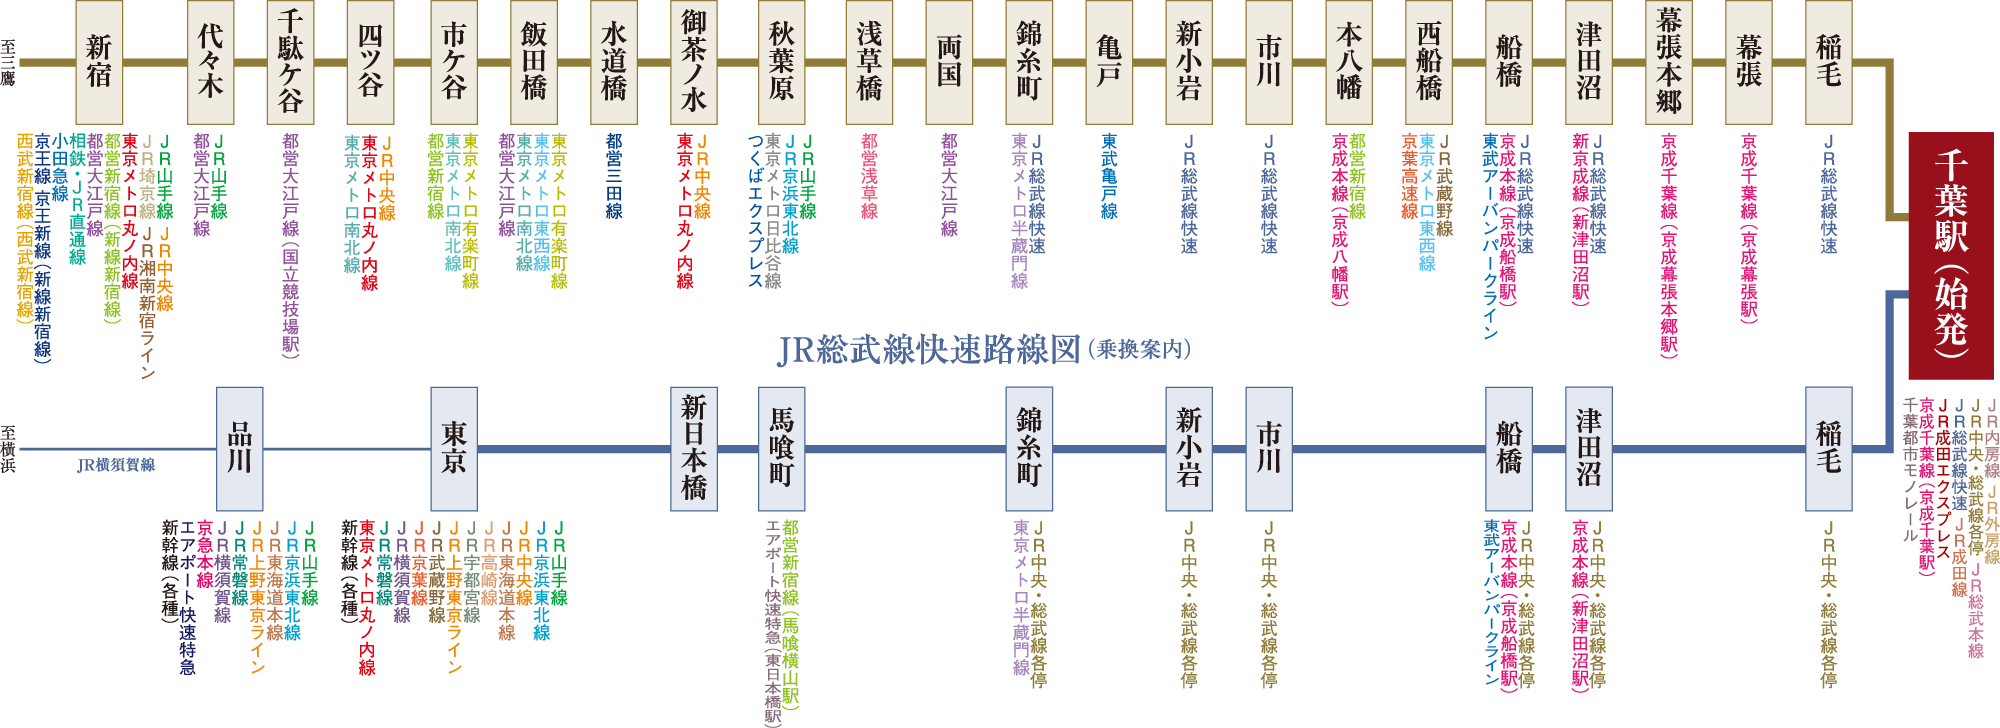 JR中央・総武線各停路線図(乗換案内)